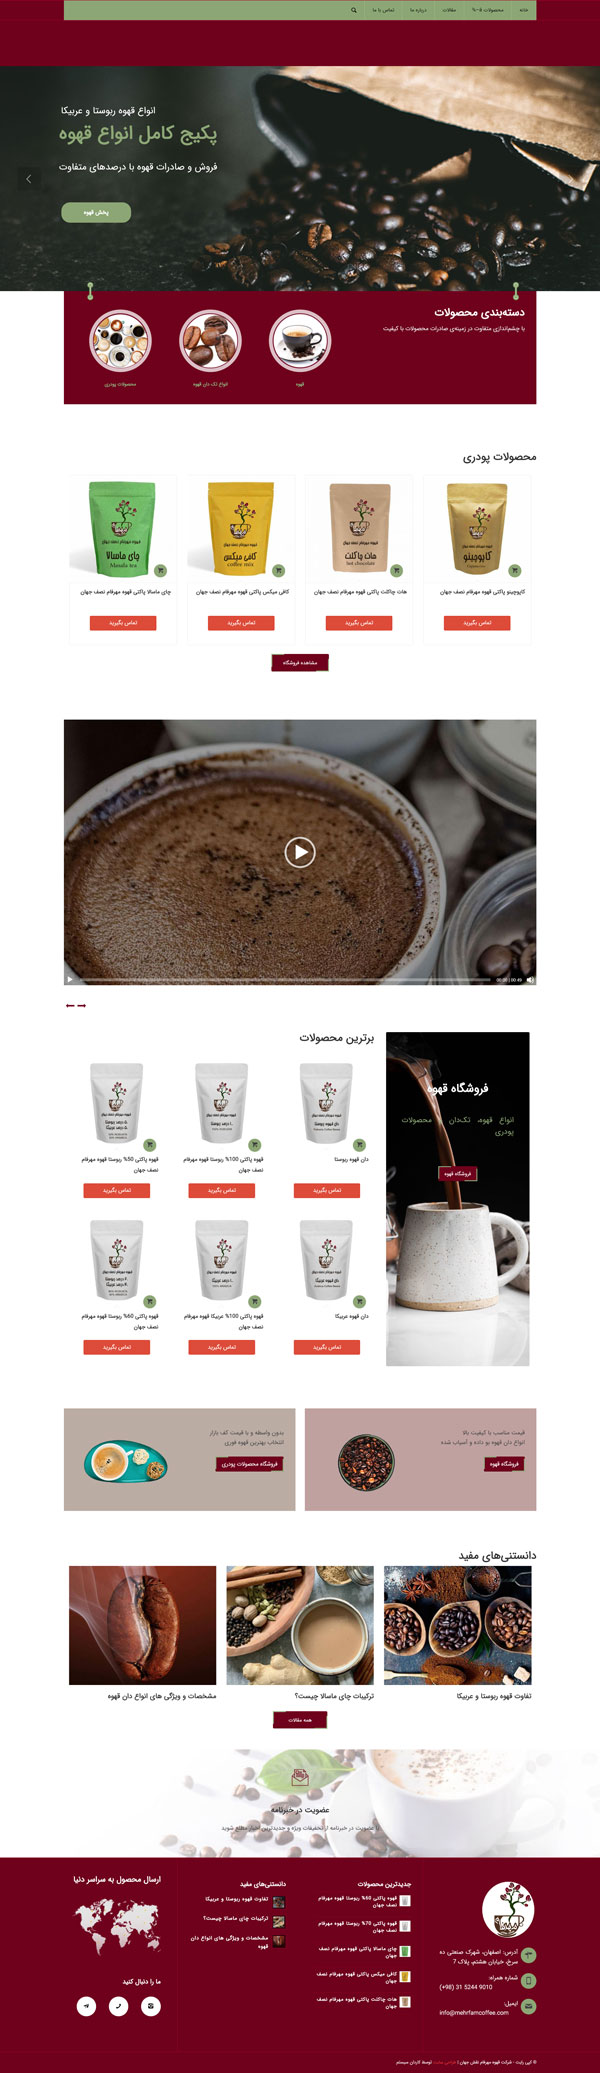 طراحی سایت مهرفام | فروشگاه قهوه، نسکافه، چای ماسالا